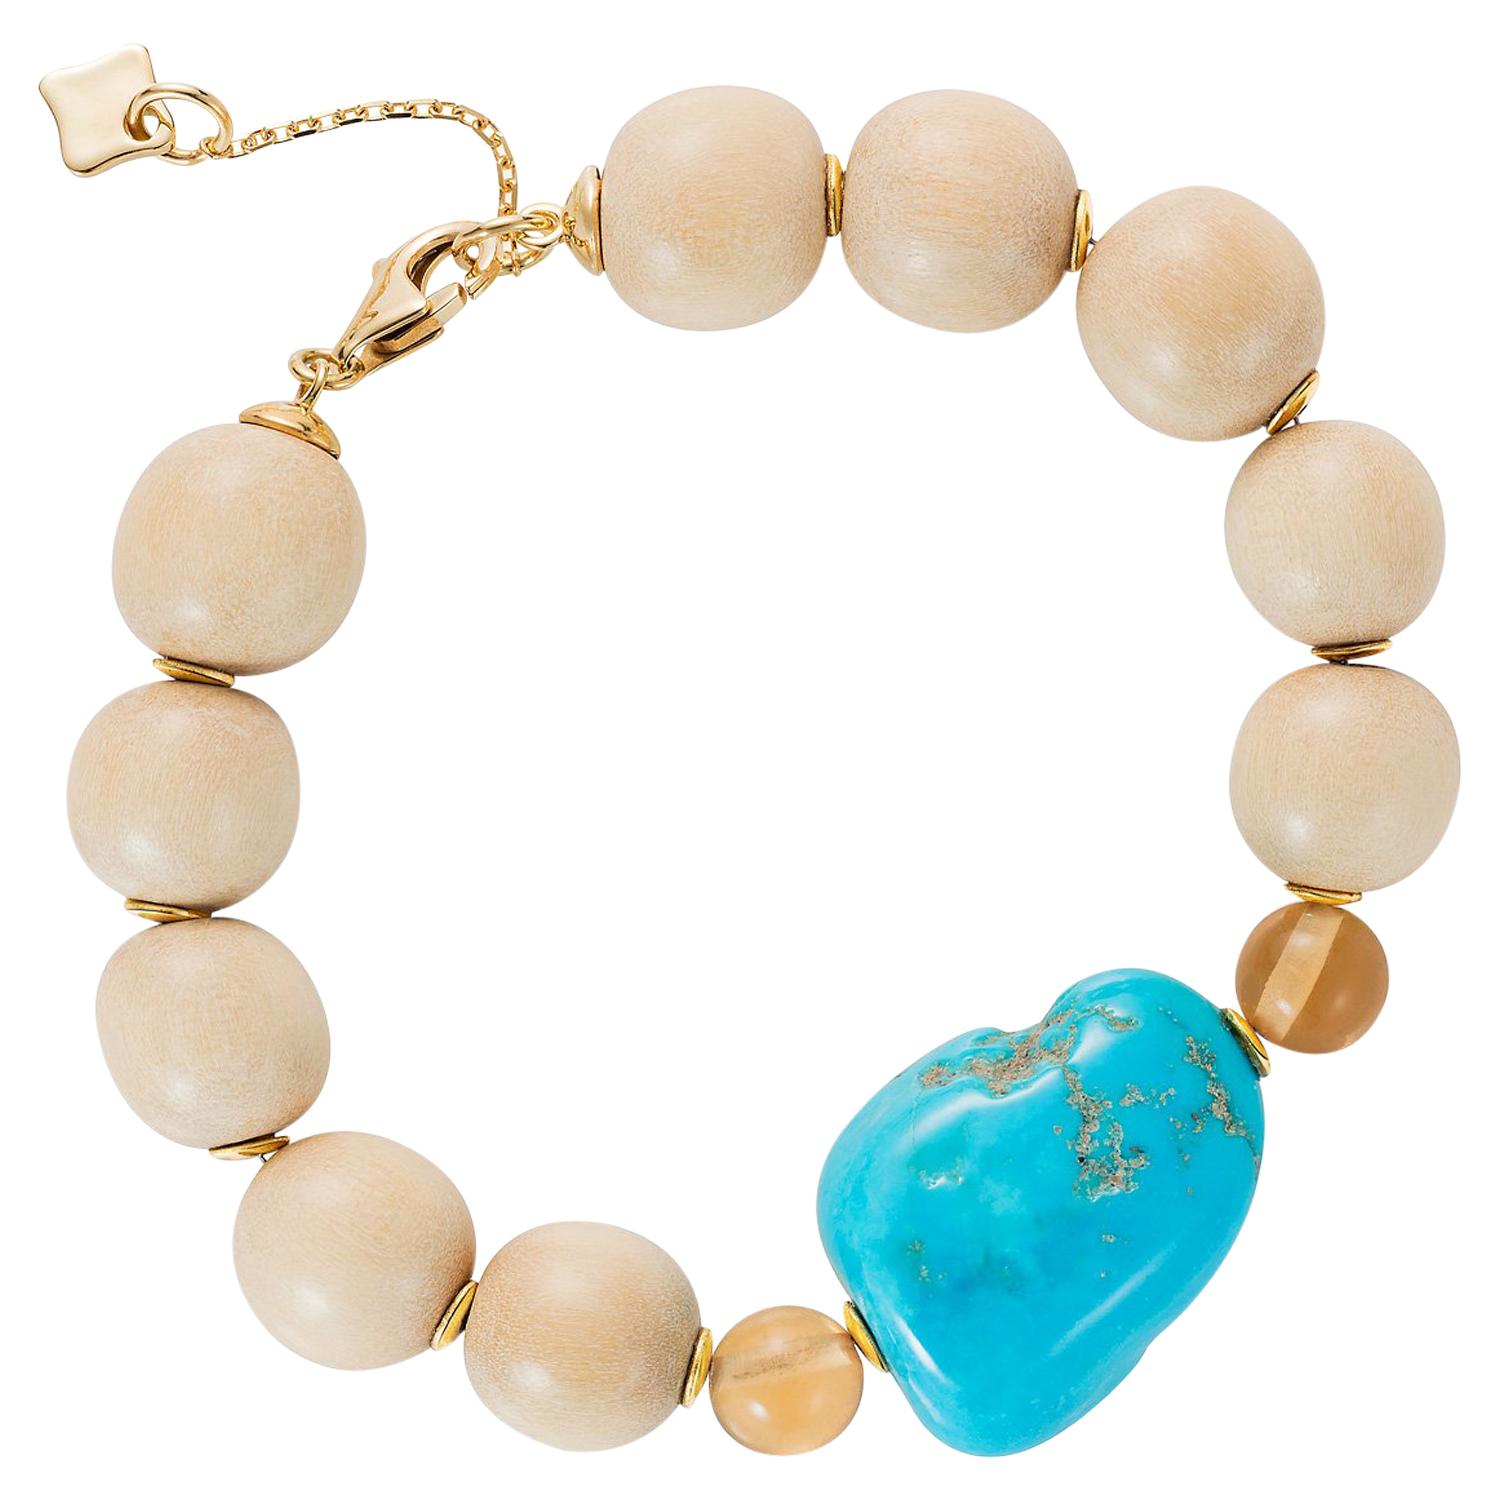  Bracelet moderne en perles de bois avec disques en or 18 carats, turquoise bourdonnée, champagne